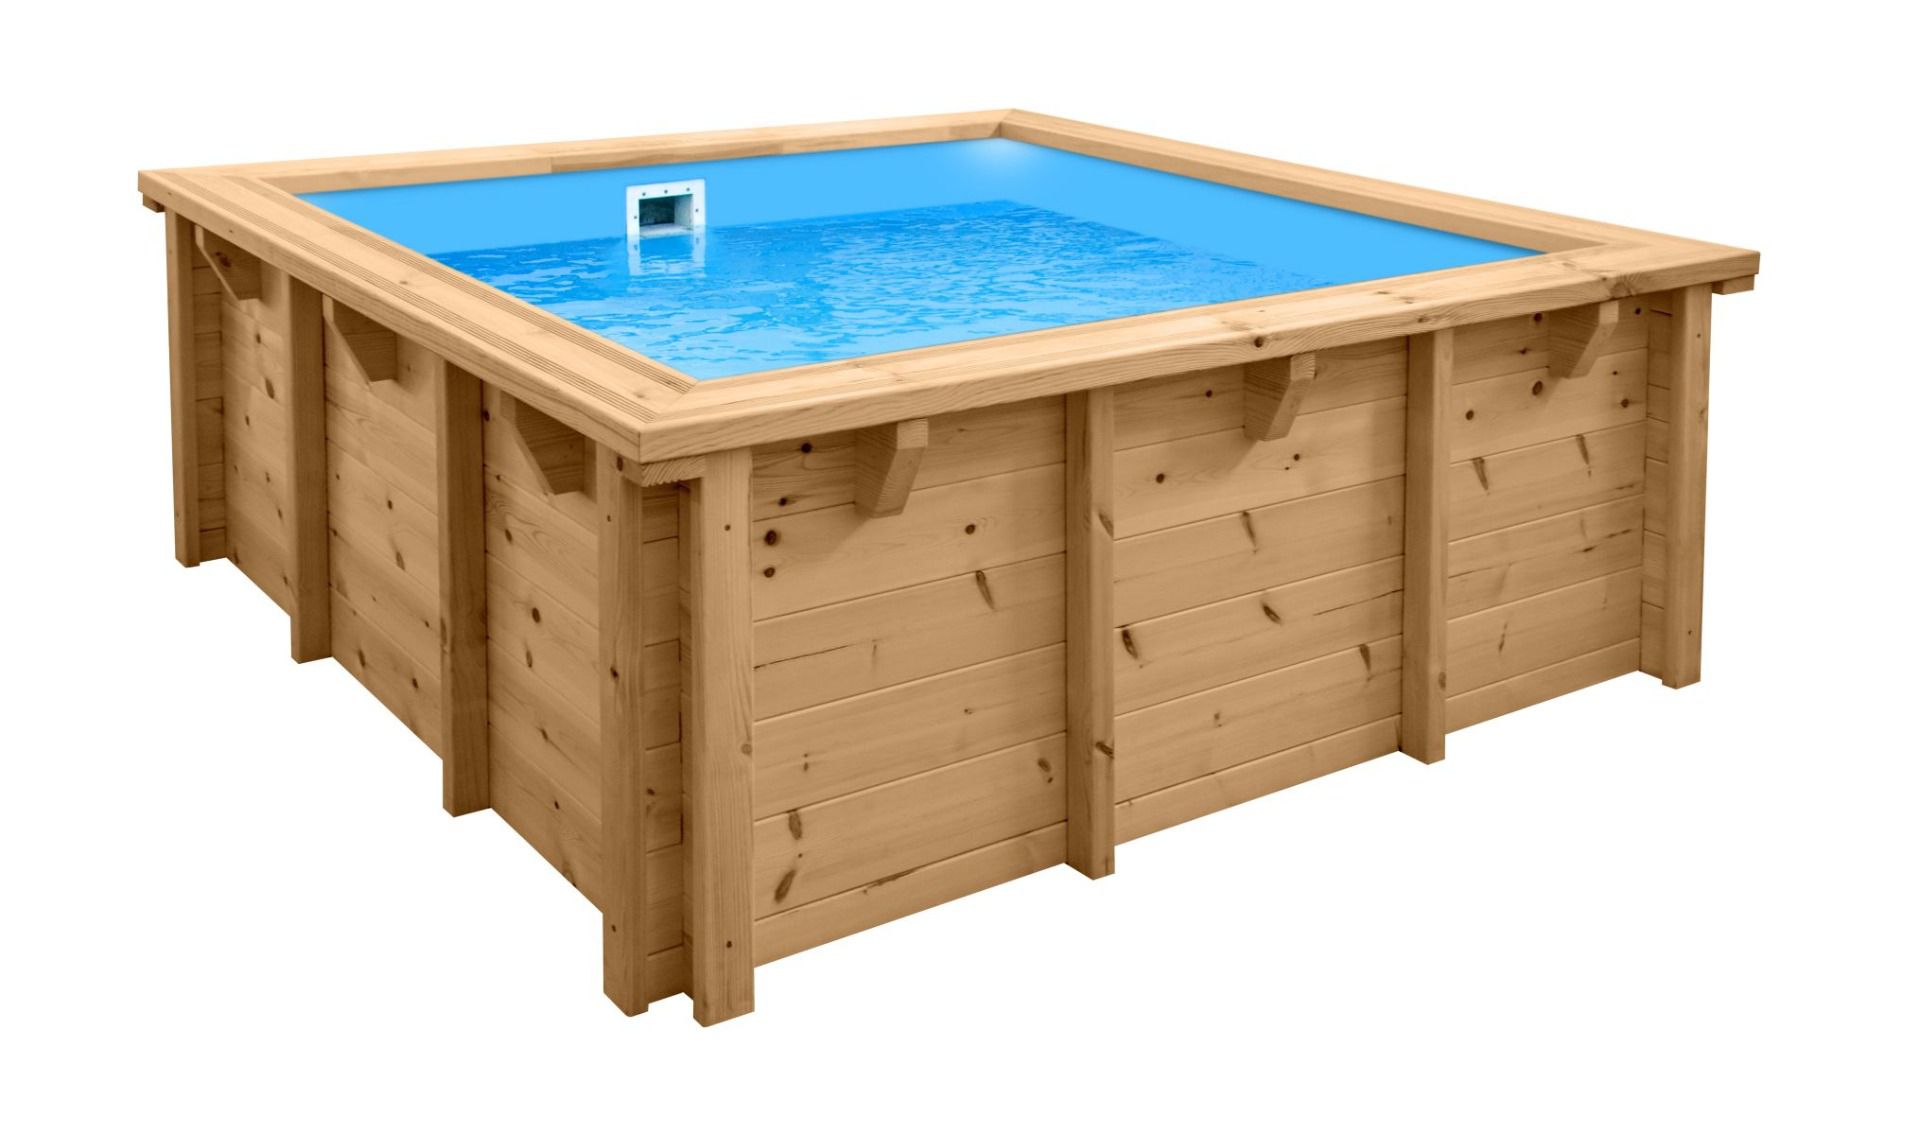 Piscine en bois moderne Sunnydream 01, 2,10 x 2,10 mètres, avec système de filtration Premium, média filtrant, bâche de piscine, voile de fond et voile mural, raccords d'angle en acier inoxydable